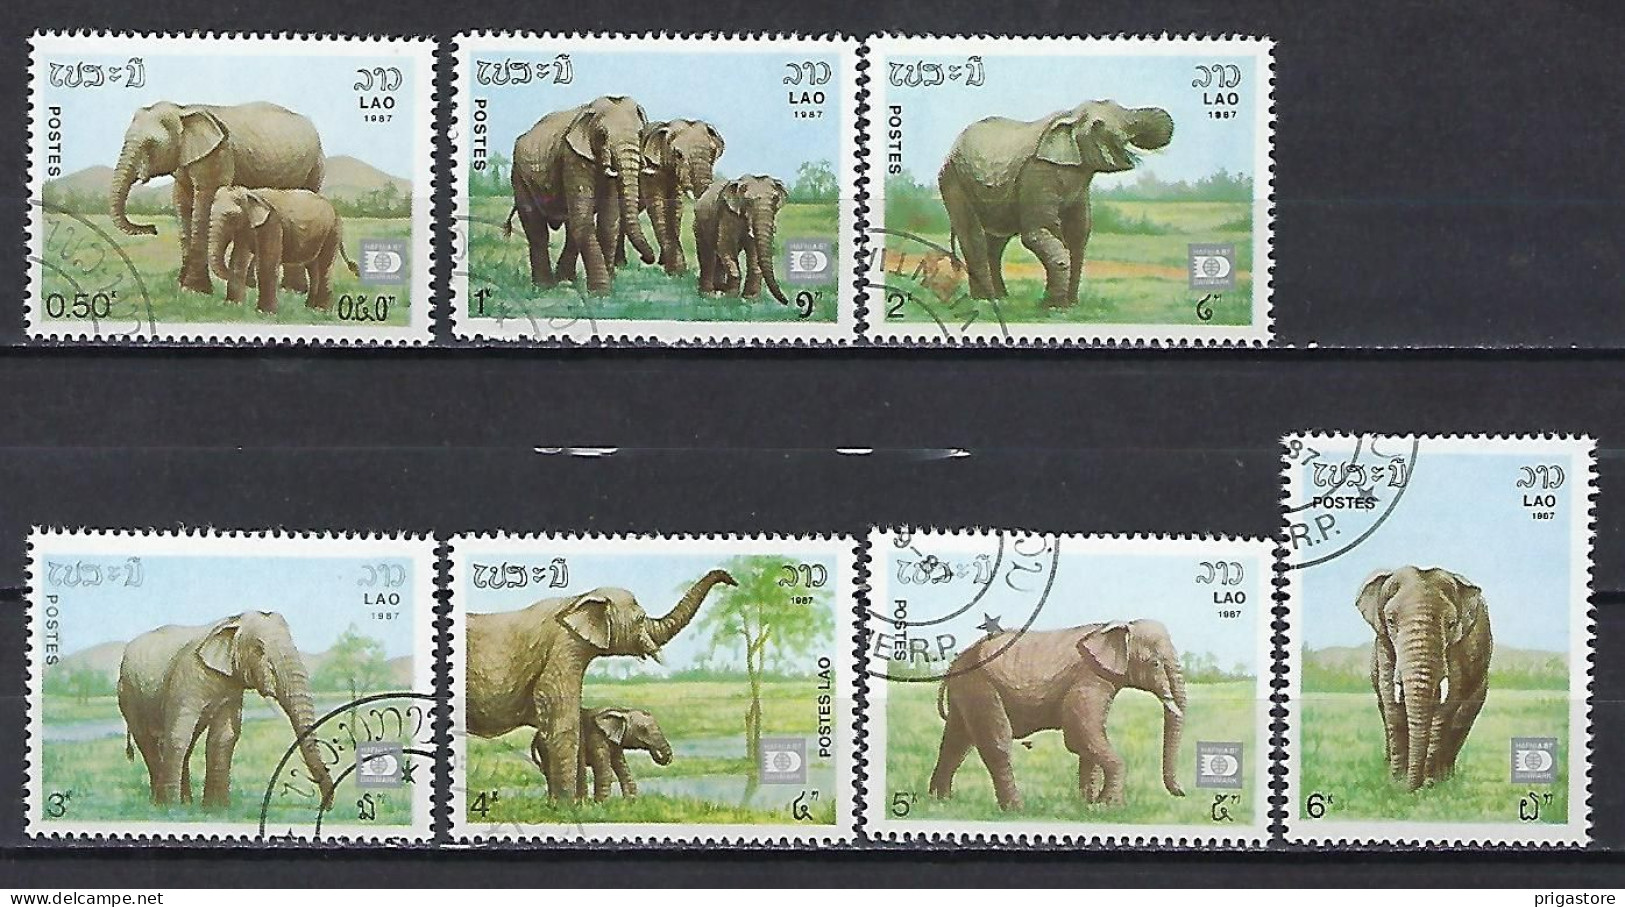 Eléphants Laos 1987 (605) Yvert 791 à 797 Oblitérés Used - Elephants